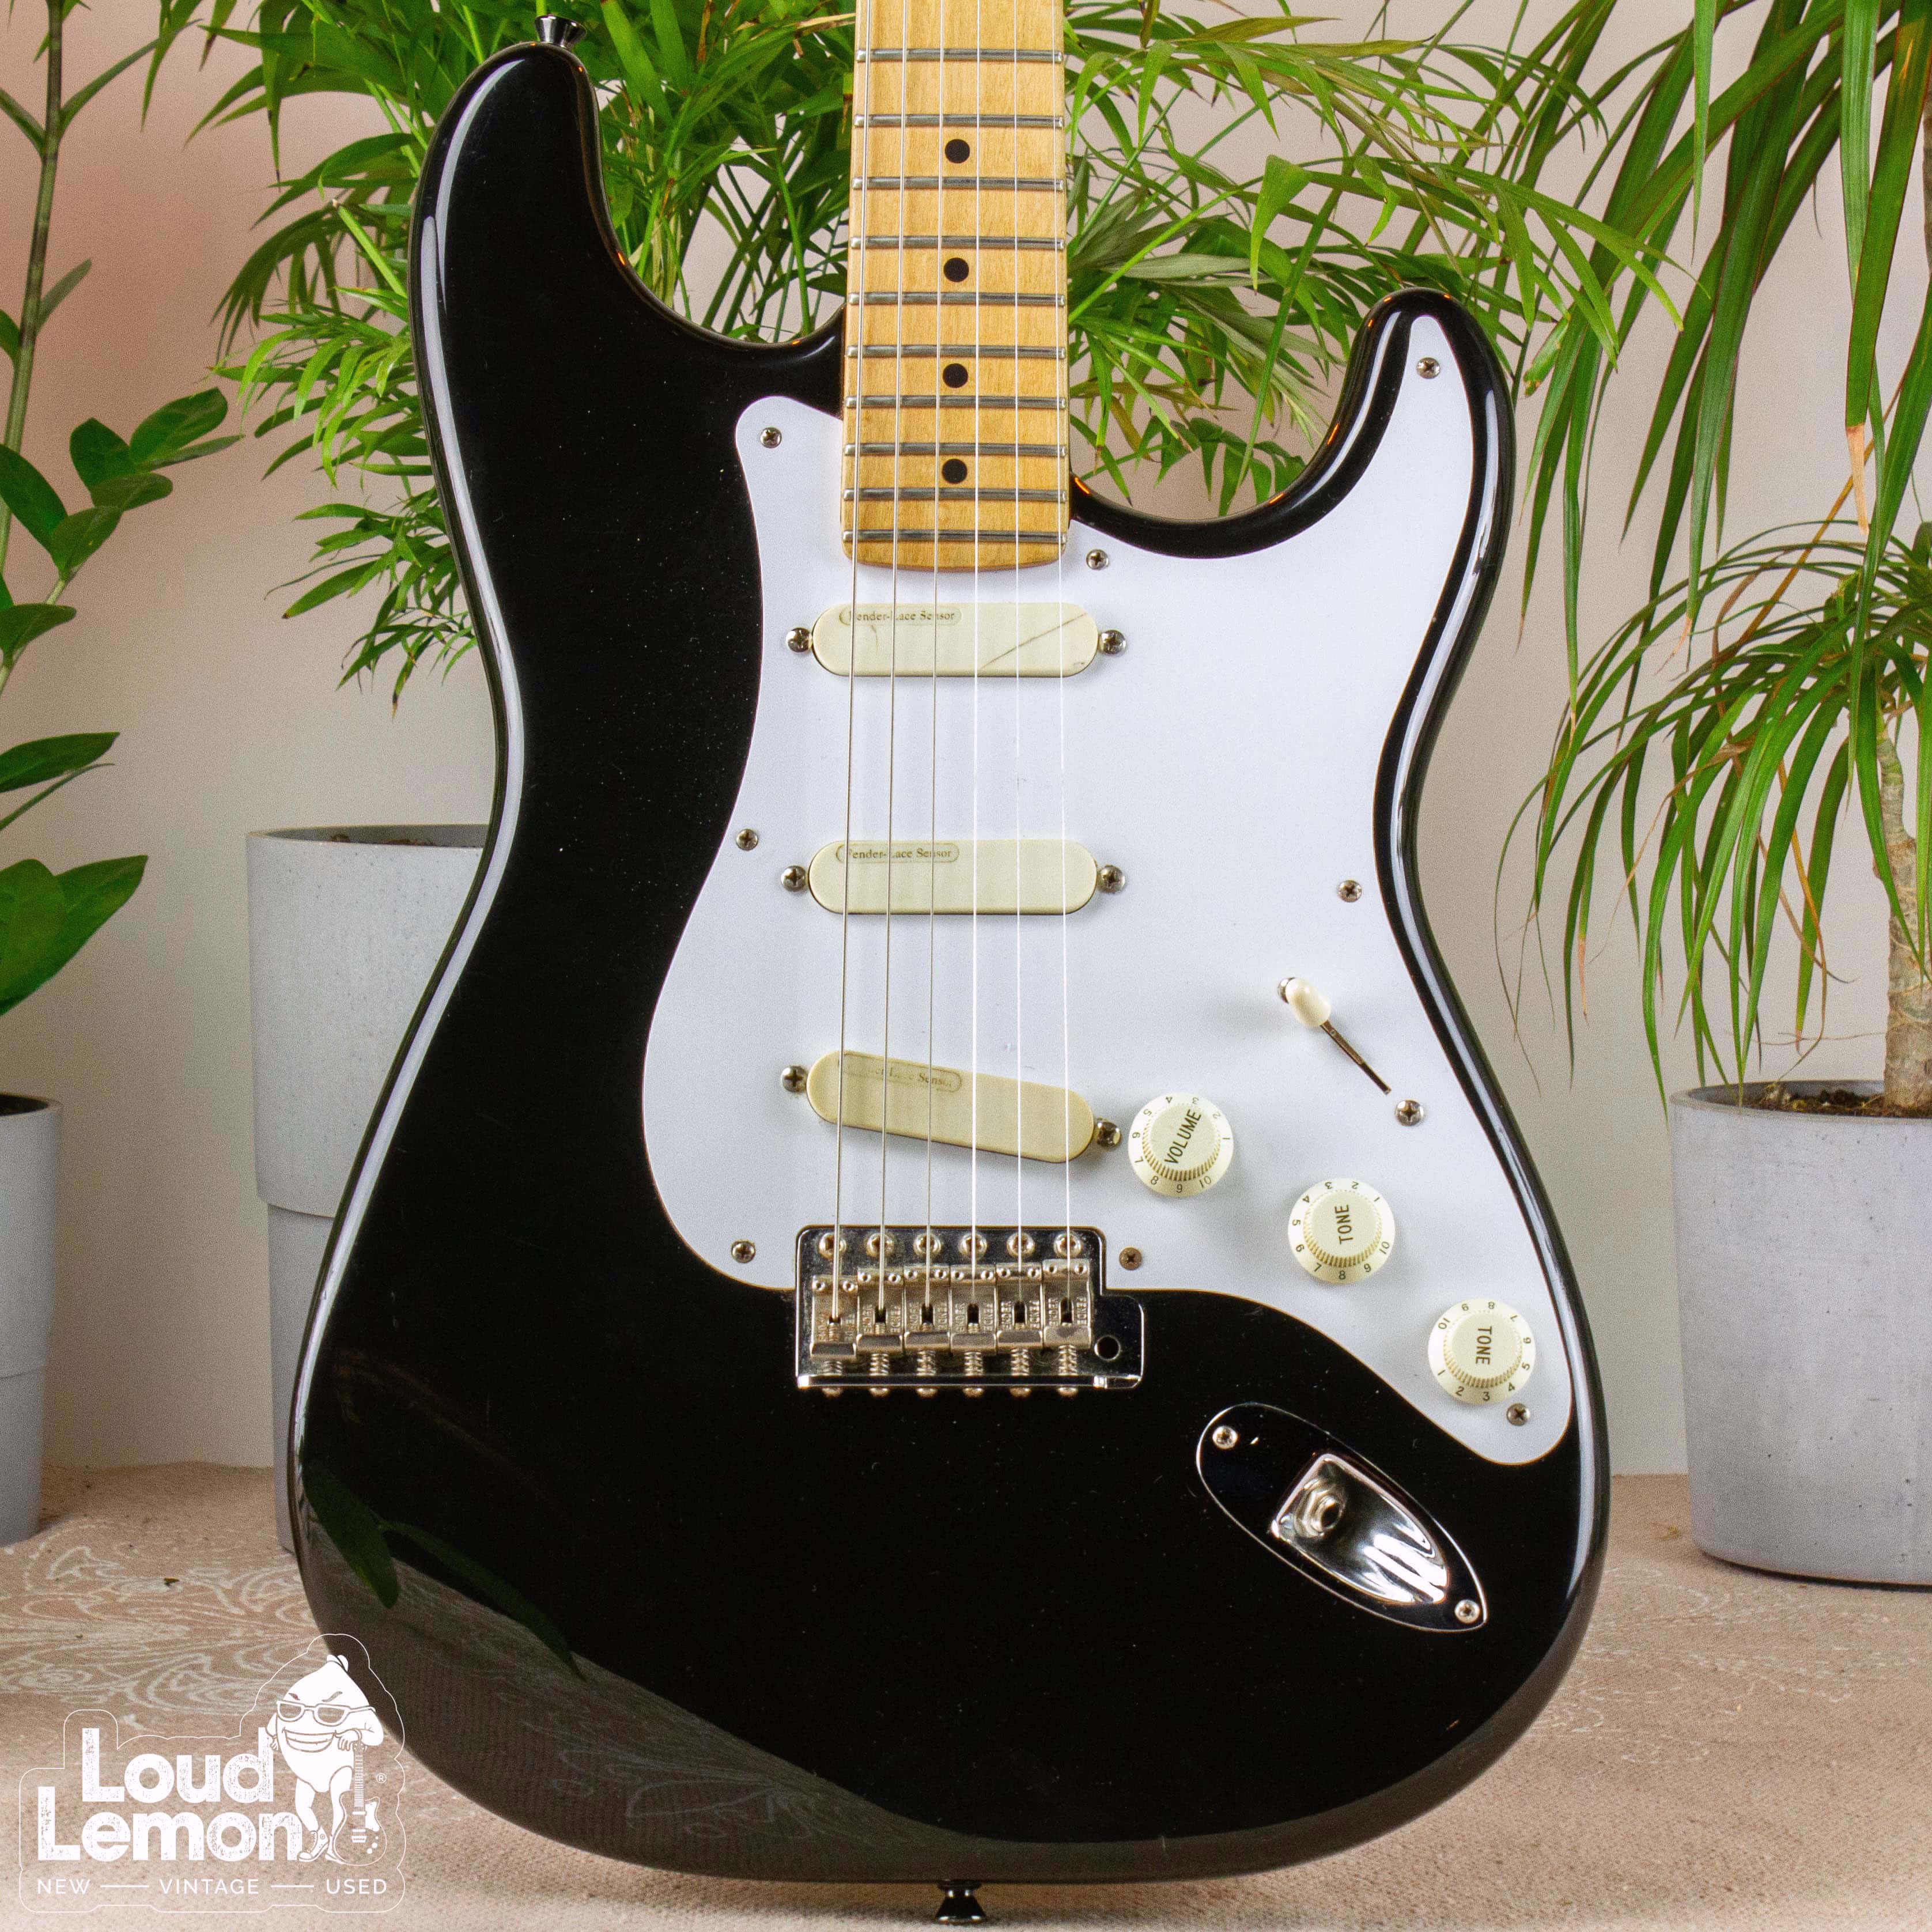 Fender Eric Clapton Stratocaster Black 1995 USA электрогитара — купить в  магазине винтажных гитар | Loud Lemon